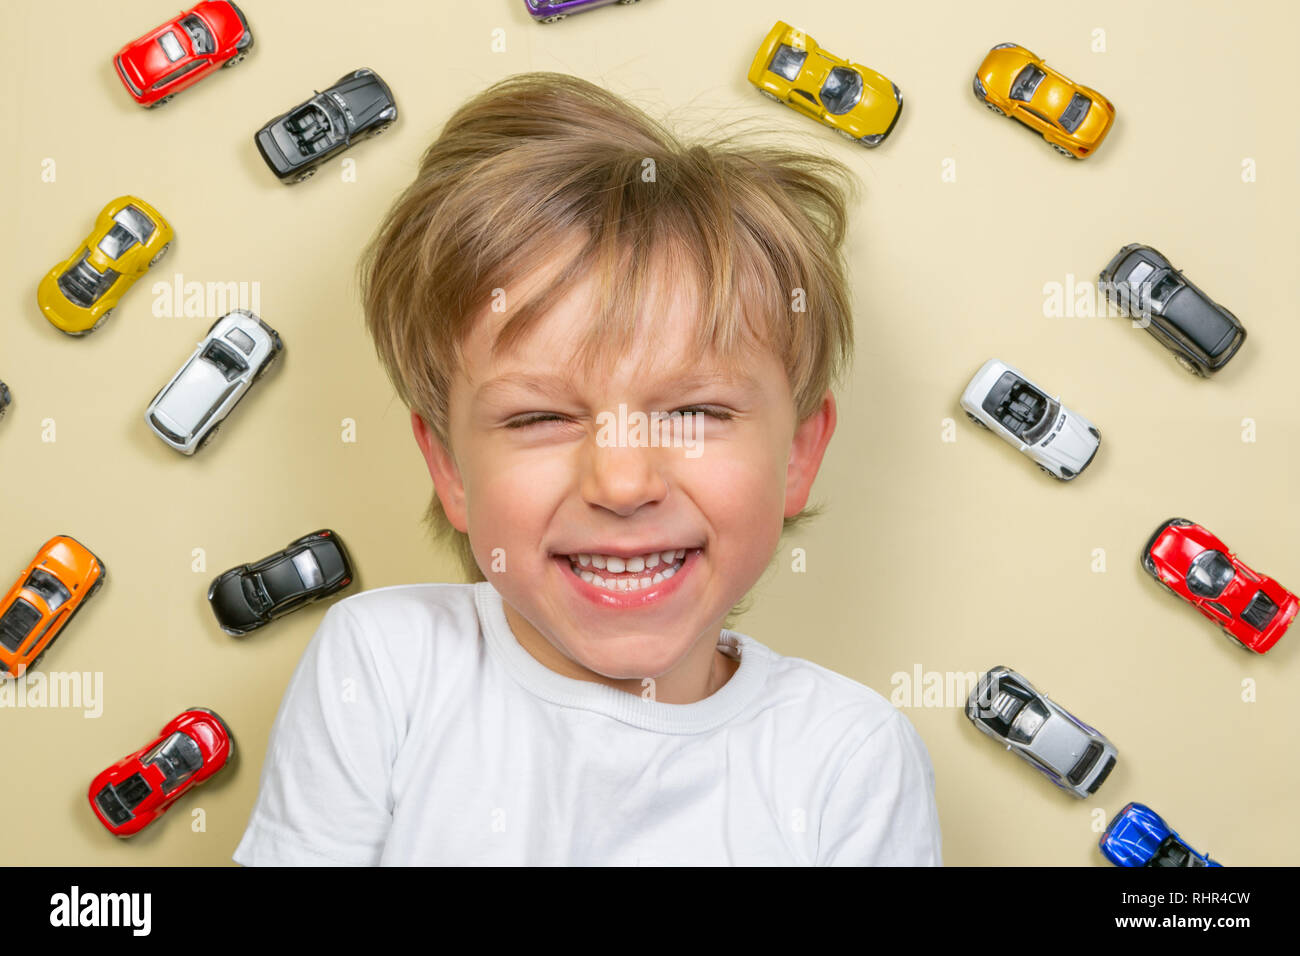 Jeune garçon avec des petites voitures jouets colorés Banque D'Images